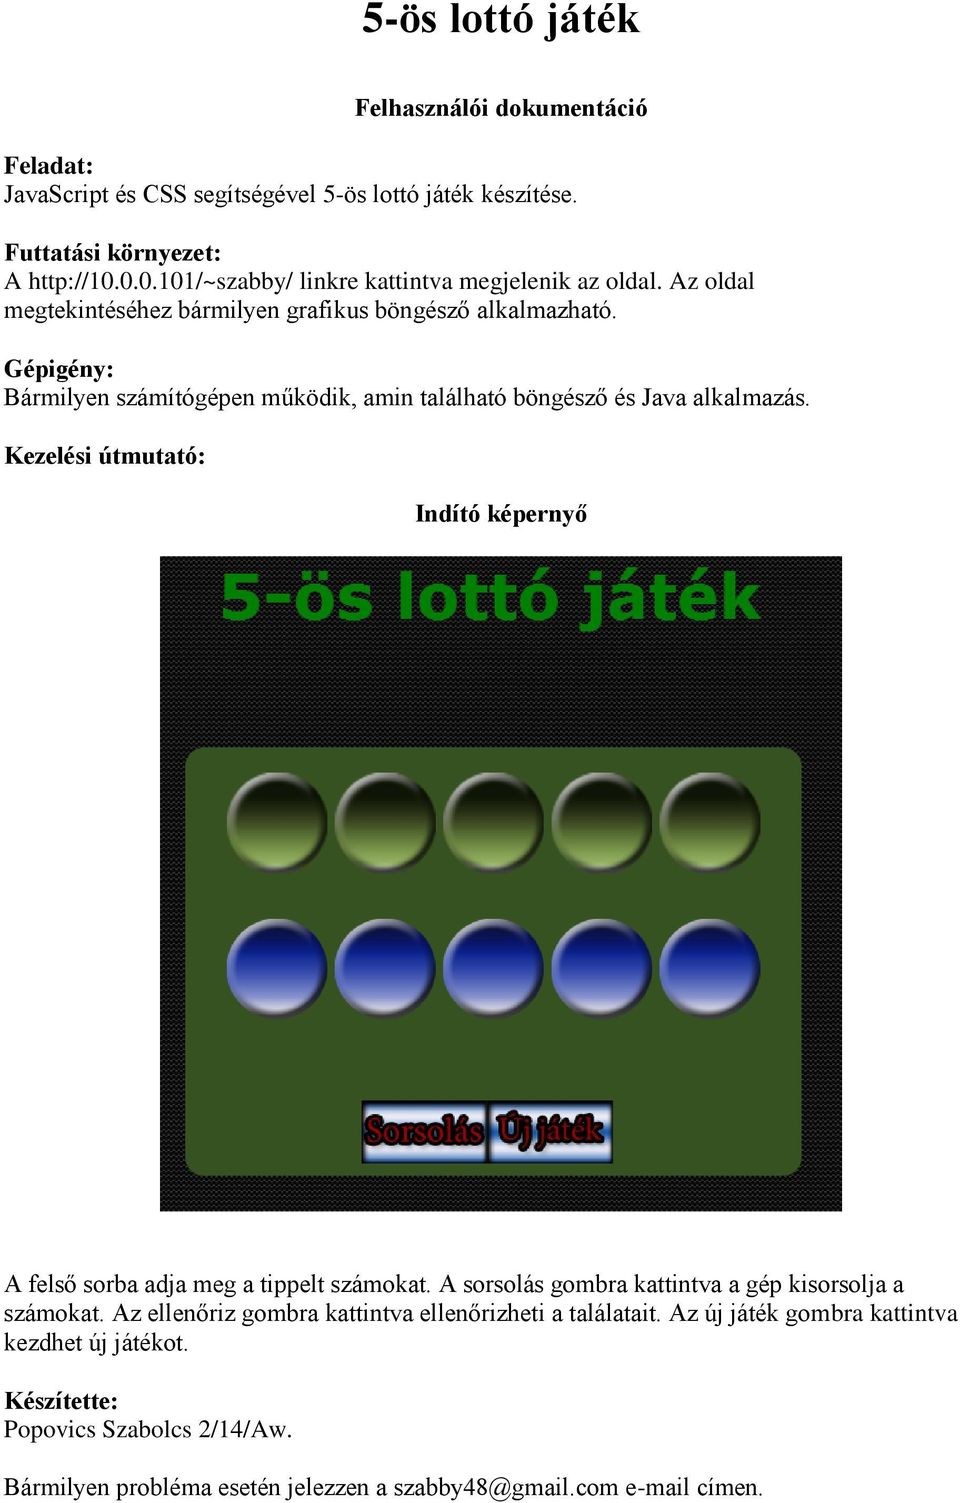 5-ös lottó játék. Felhasználói dokumentáció - PDF Ingyenes letöltés